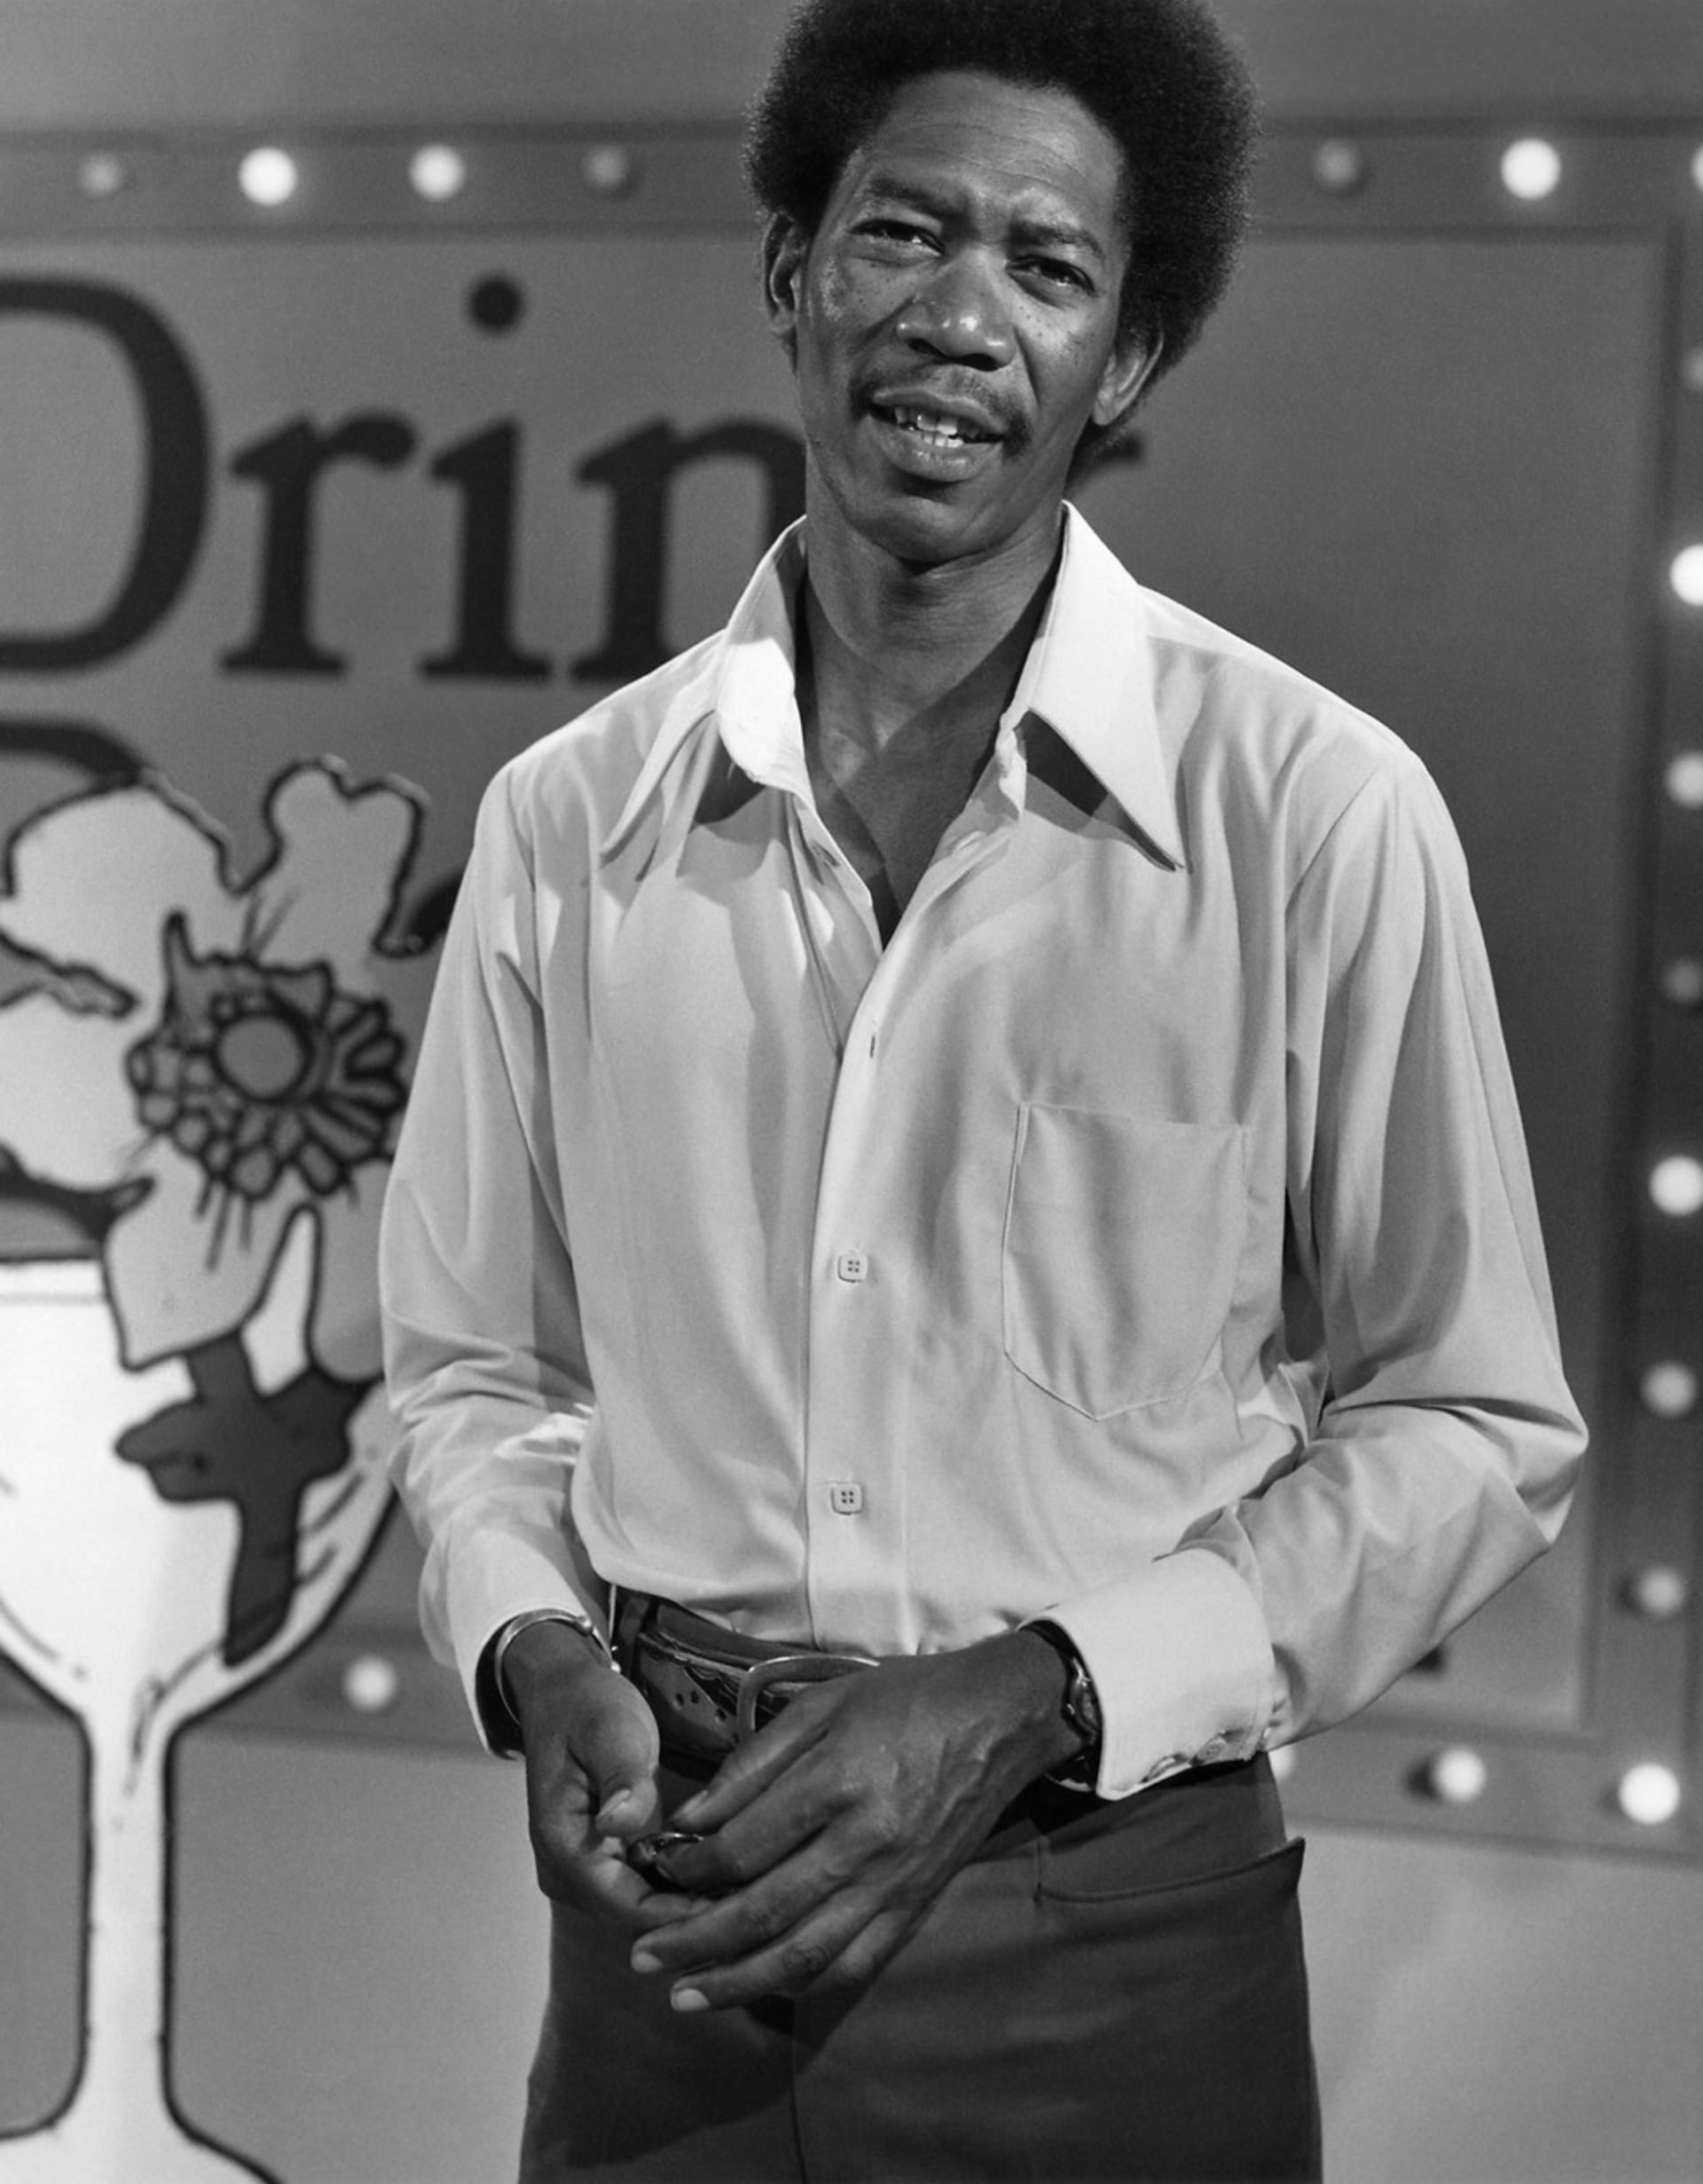 Morgan Freeman v roce 1970, kdy byla jeho kariéra stále relativně v plenkách.